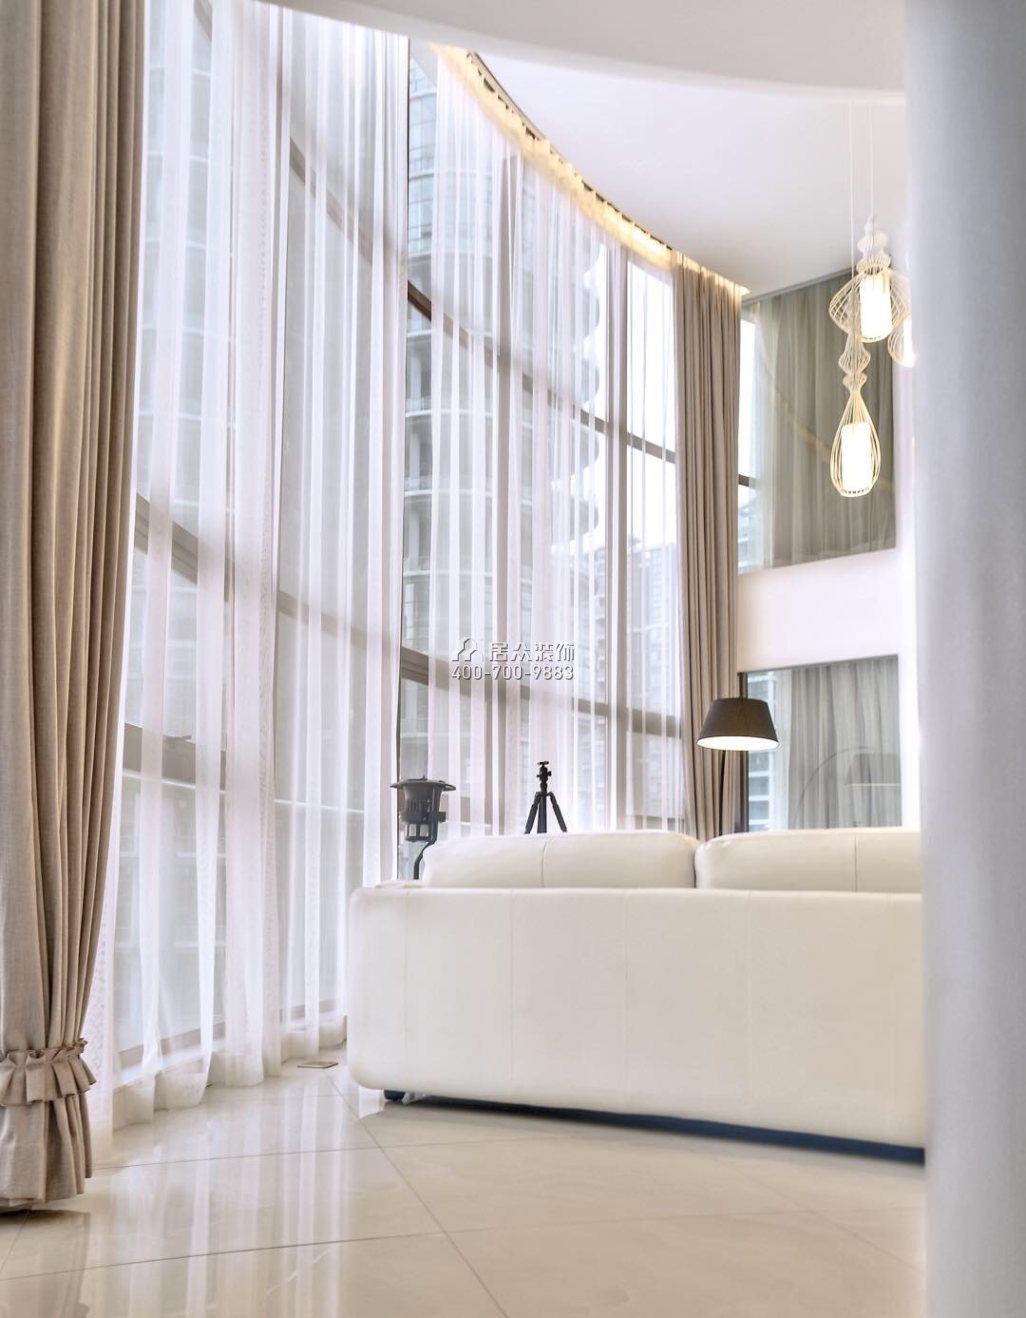 富灣國際320平方米現代簡約風格復式戶型客廳裝修效果圖